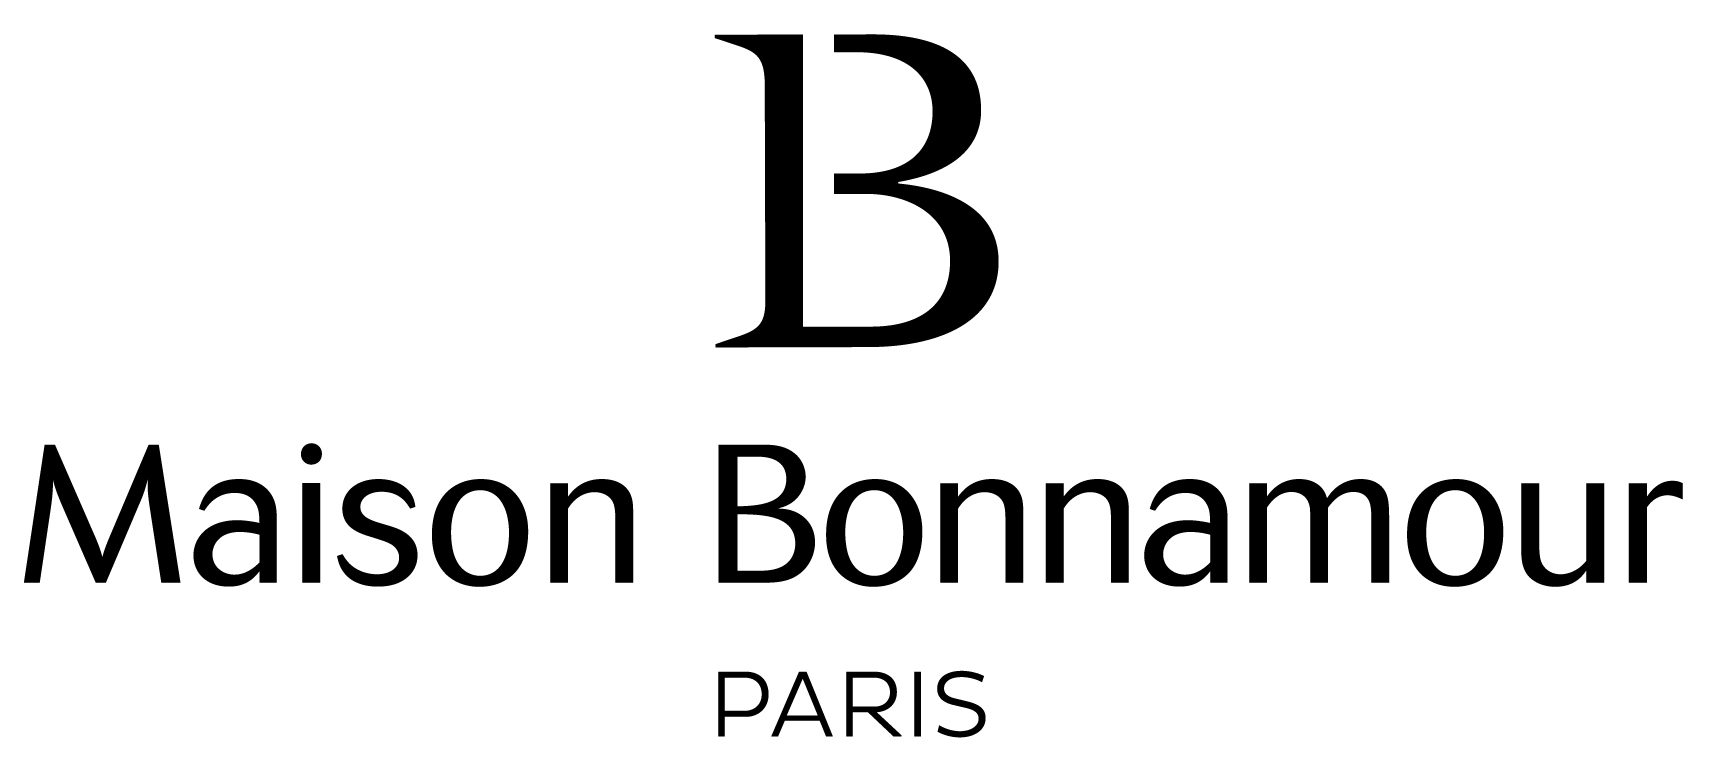 Maison Bonnamour - sacs et accessoires fabriqués en France, en maroquinerie végétale